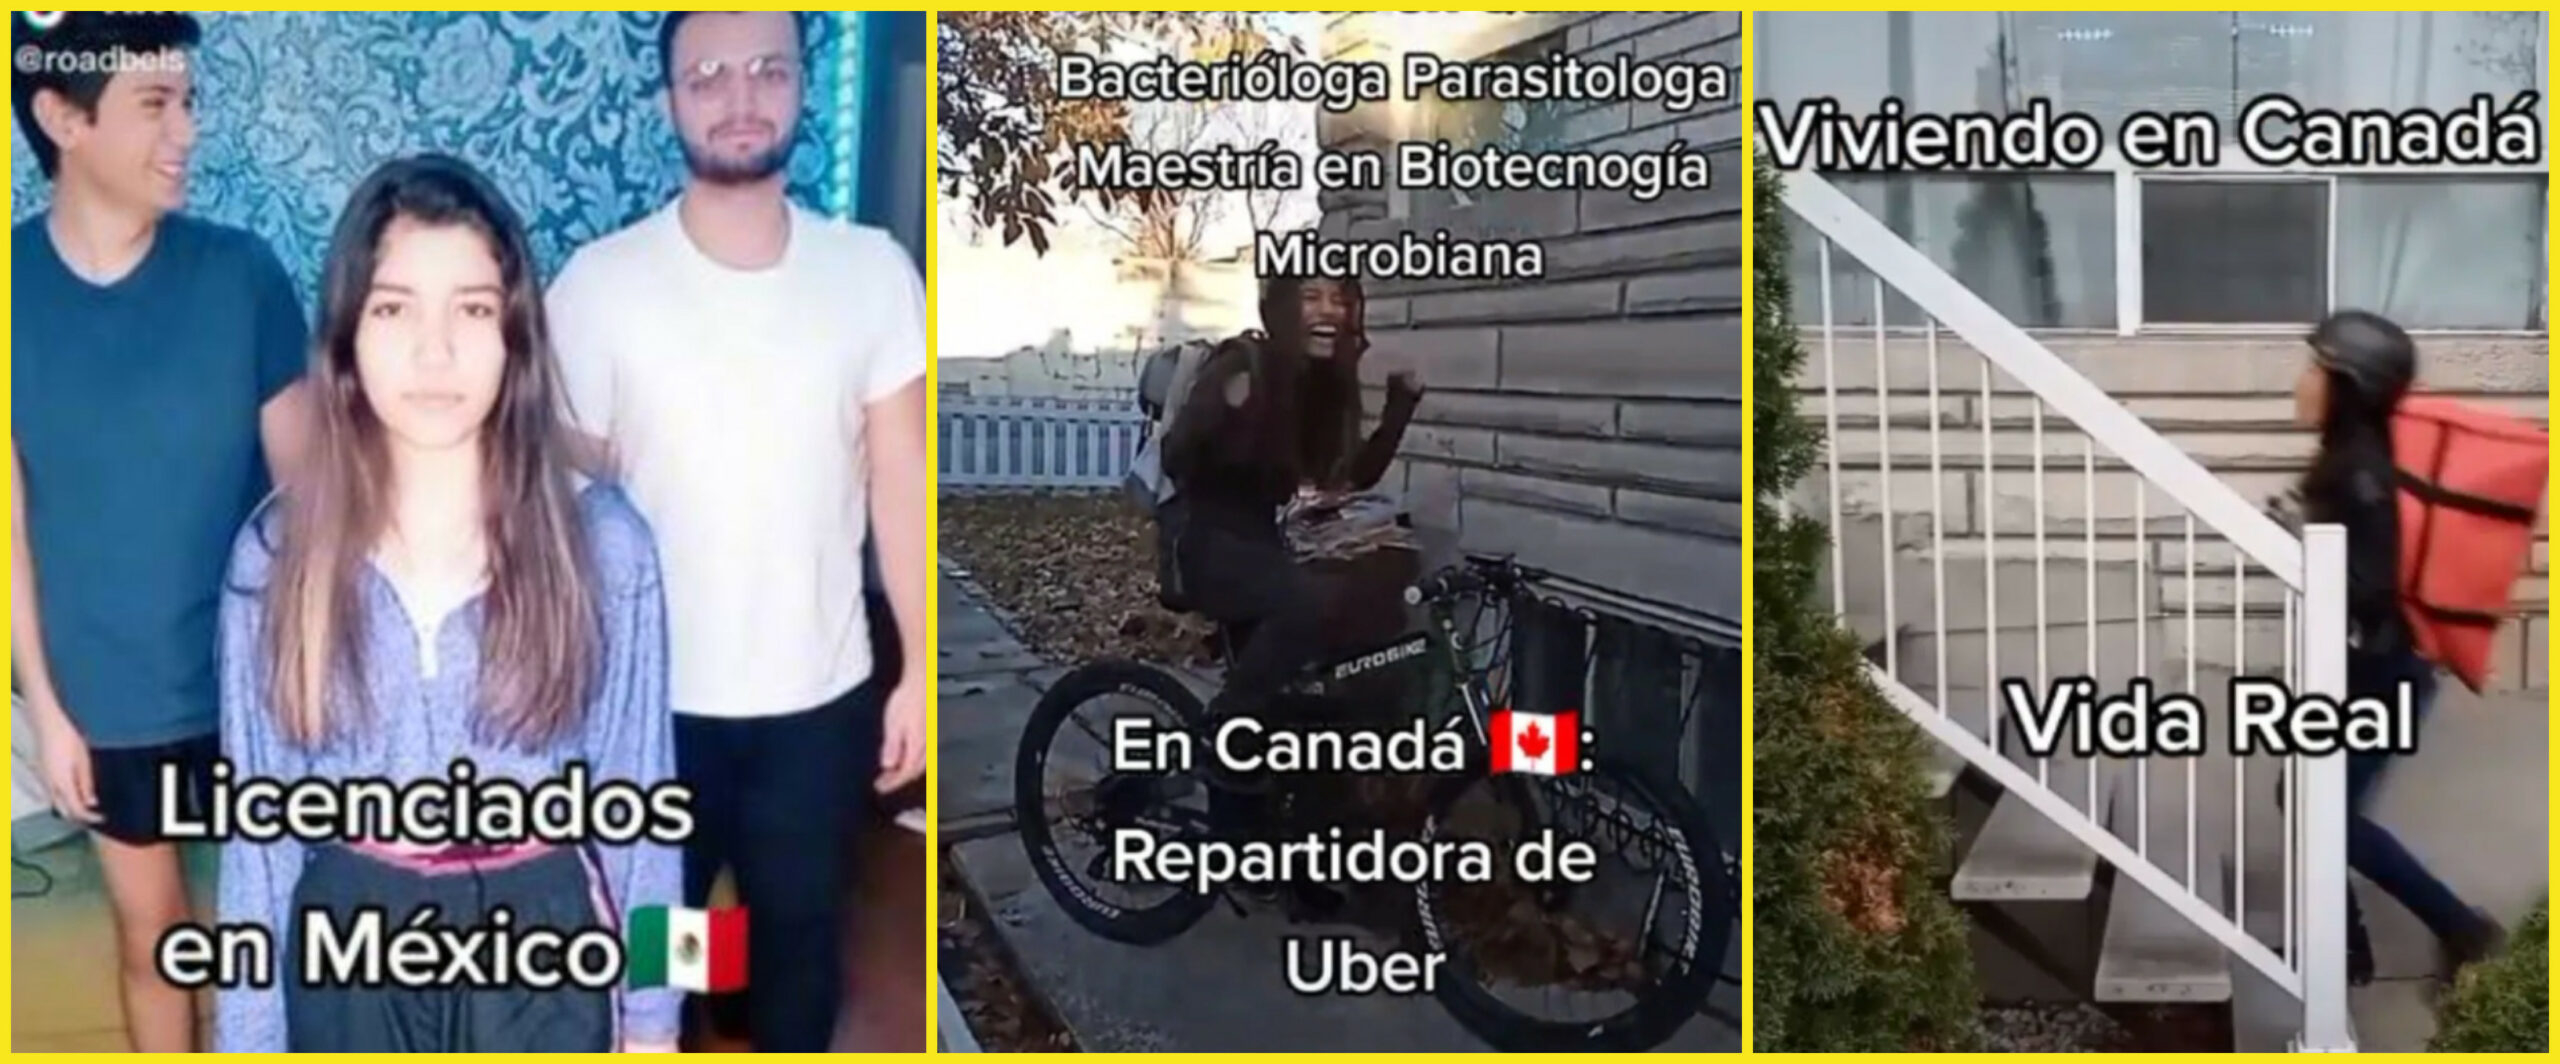 Licenciada mexicana presume su estilo de vida como repartidora en Canadá y se vuelve viral